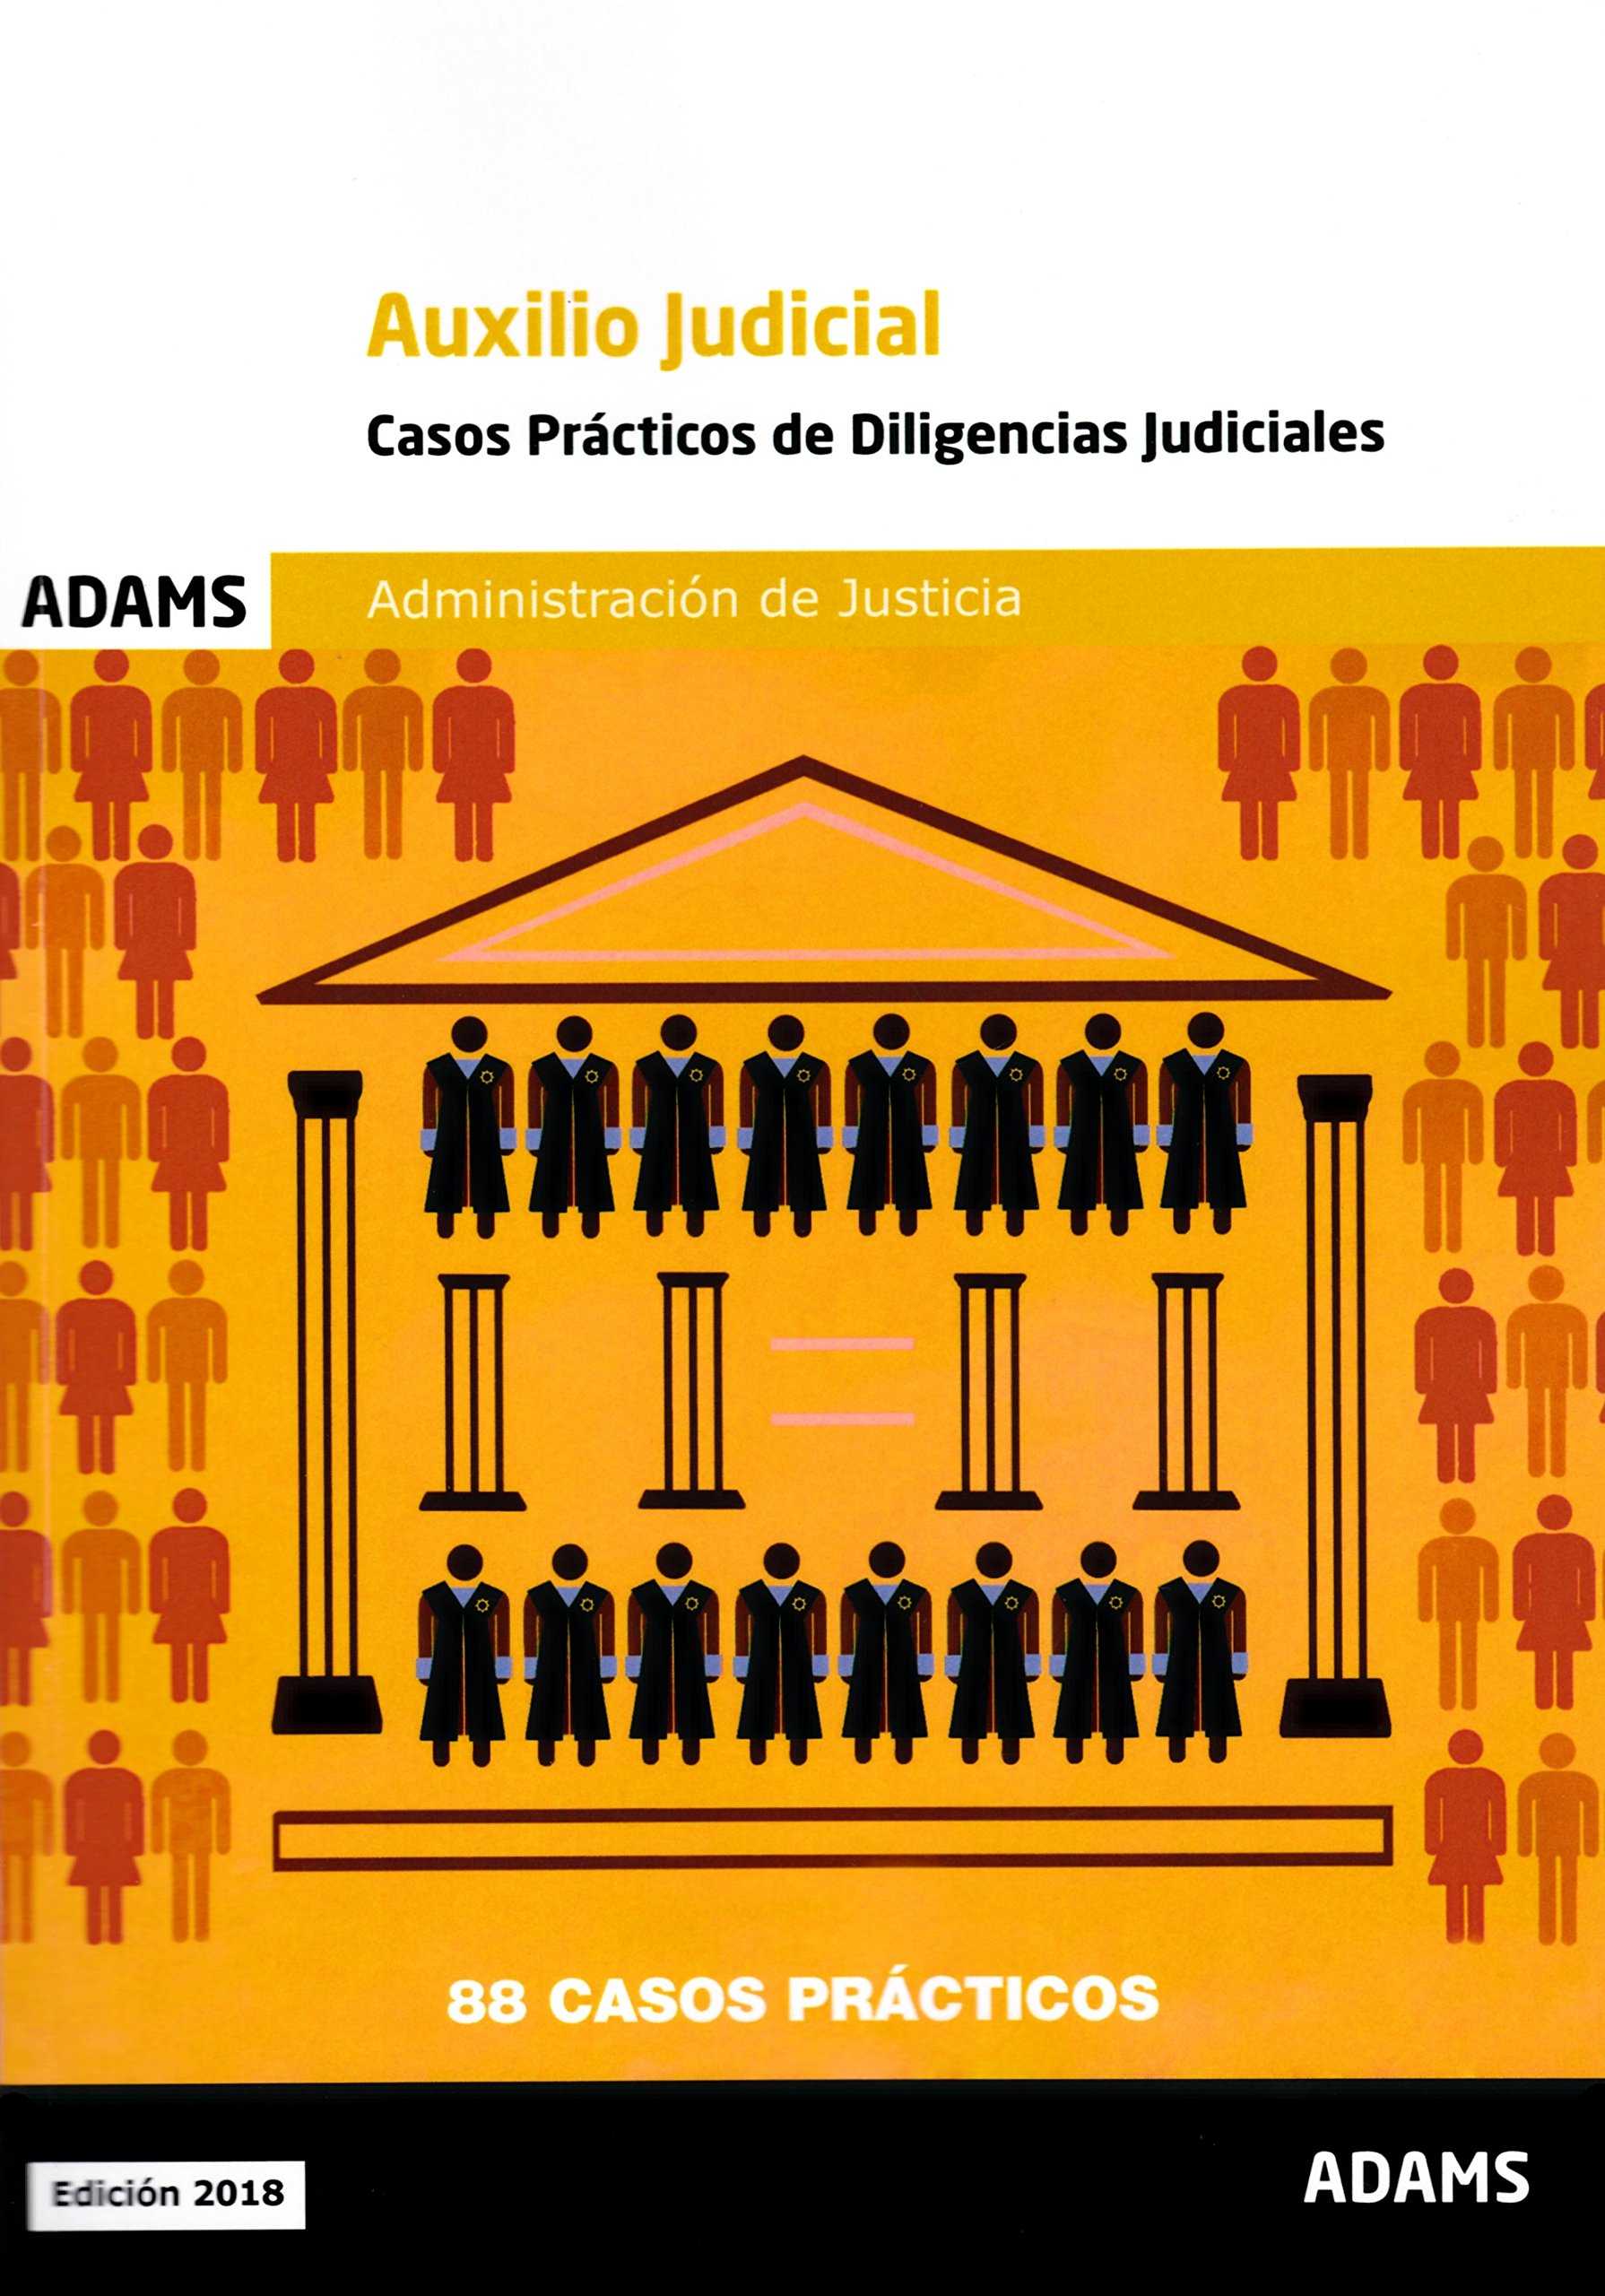 AUXILIO JUDICIAL CASOS PRÁCTICOS DE DILIGENCIAS JUDICIALES